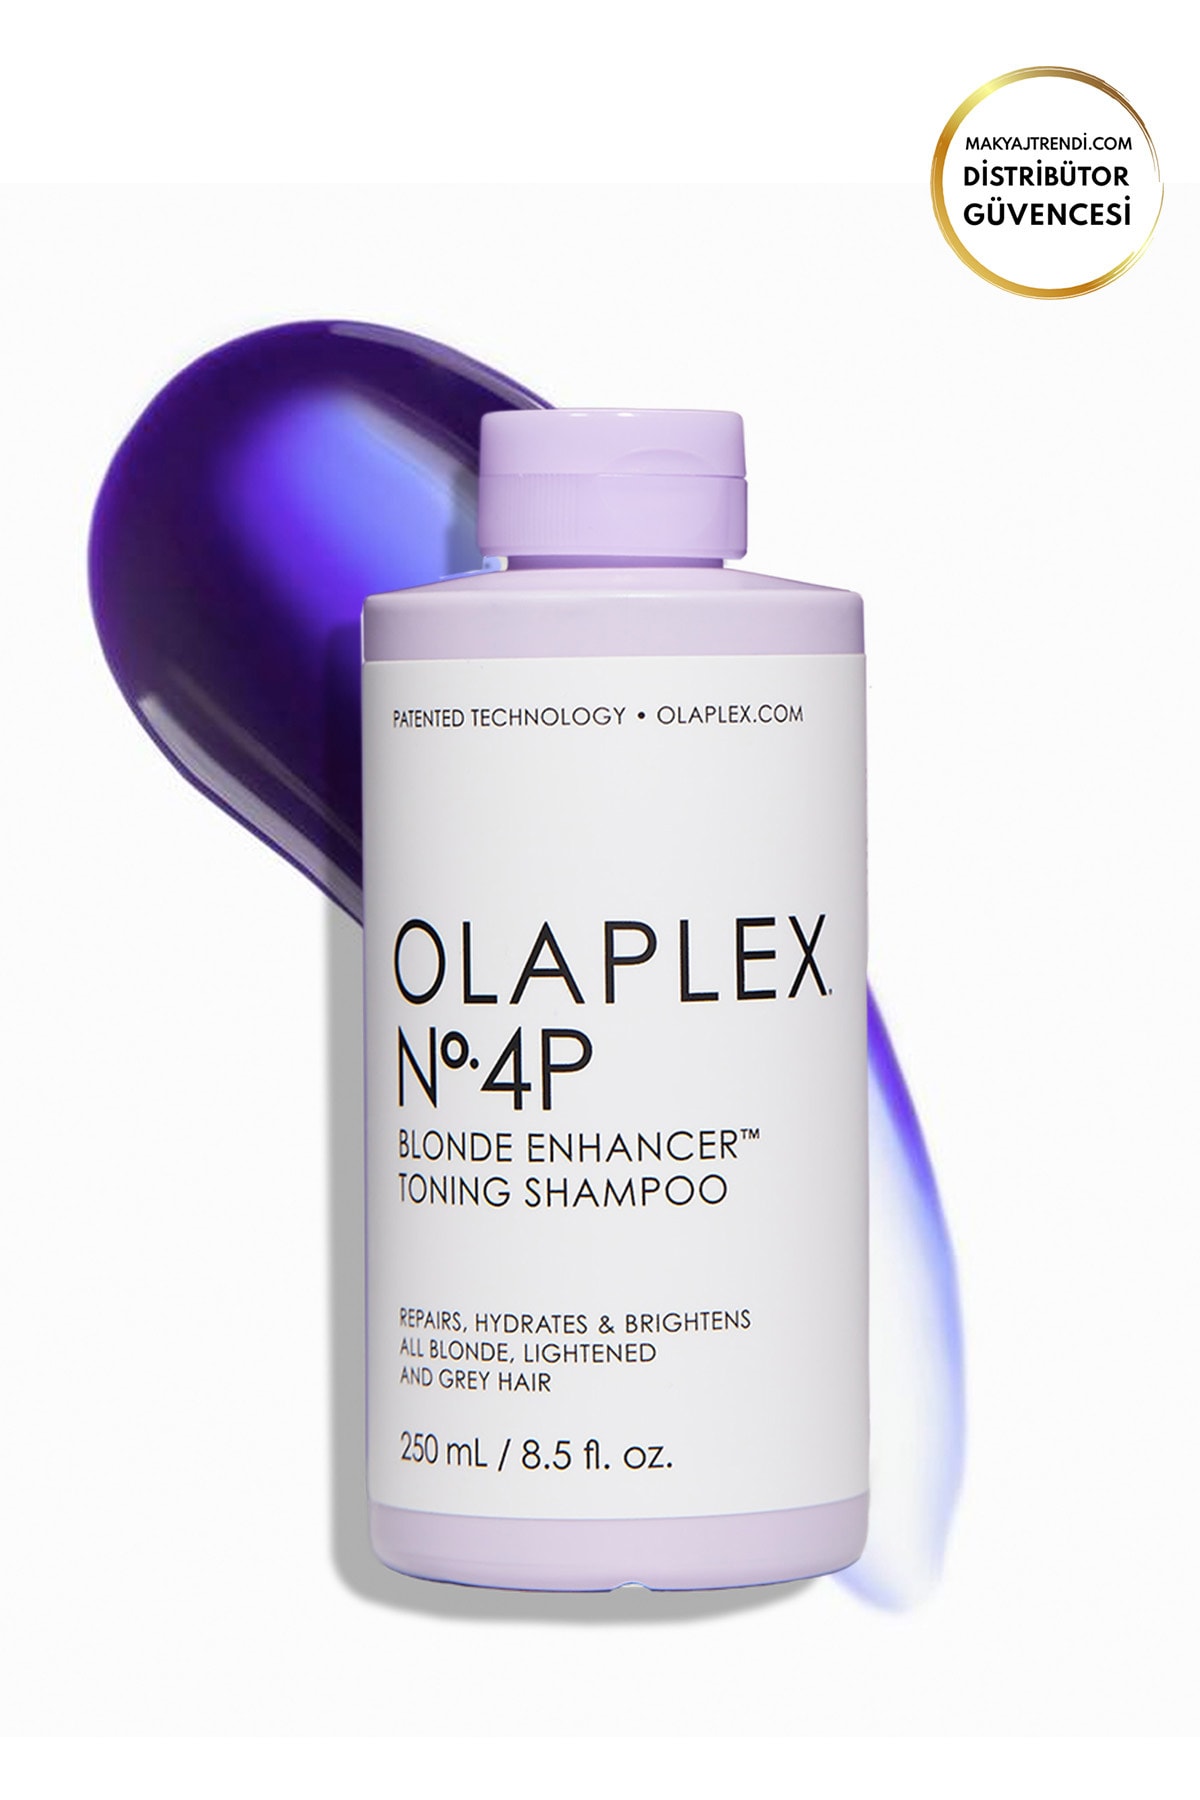 Olaplex Nº.4p Blonde Enhancer Toning Shampoo - Renk Koruyucu & Bağ Güçlendirici Mor Şampuan